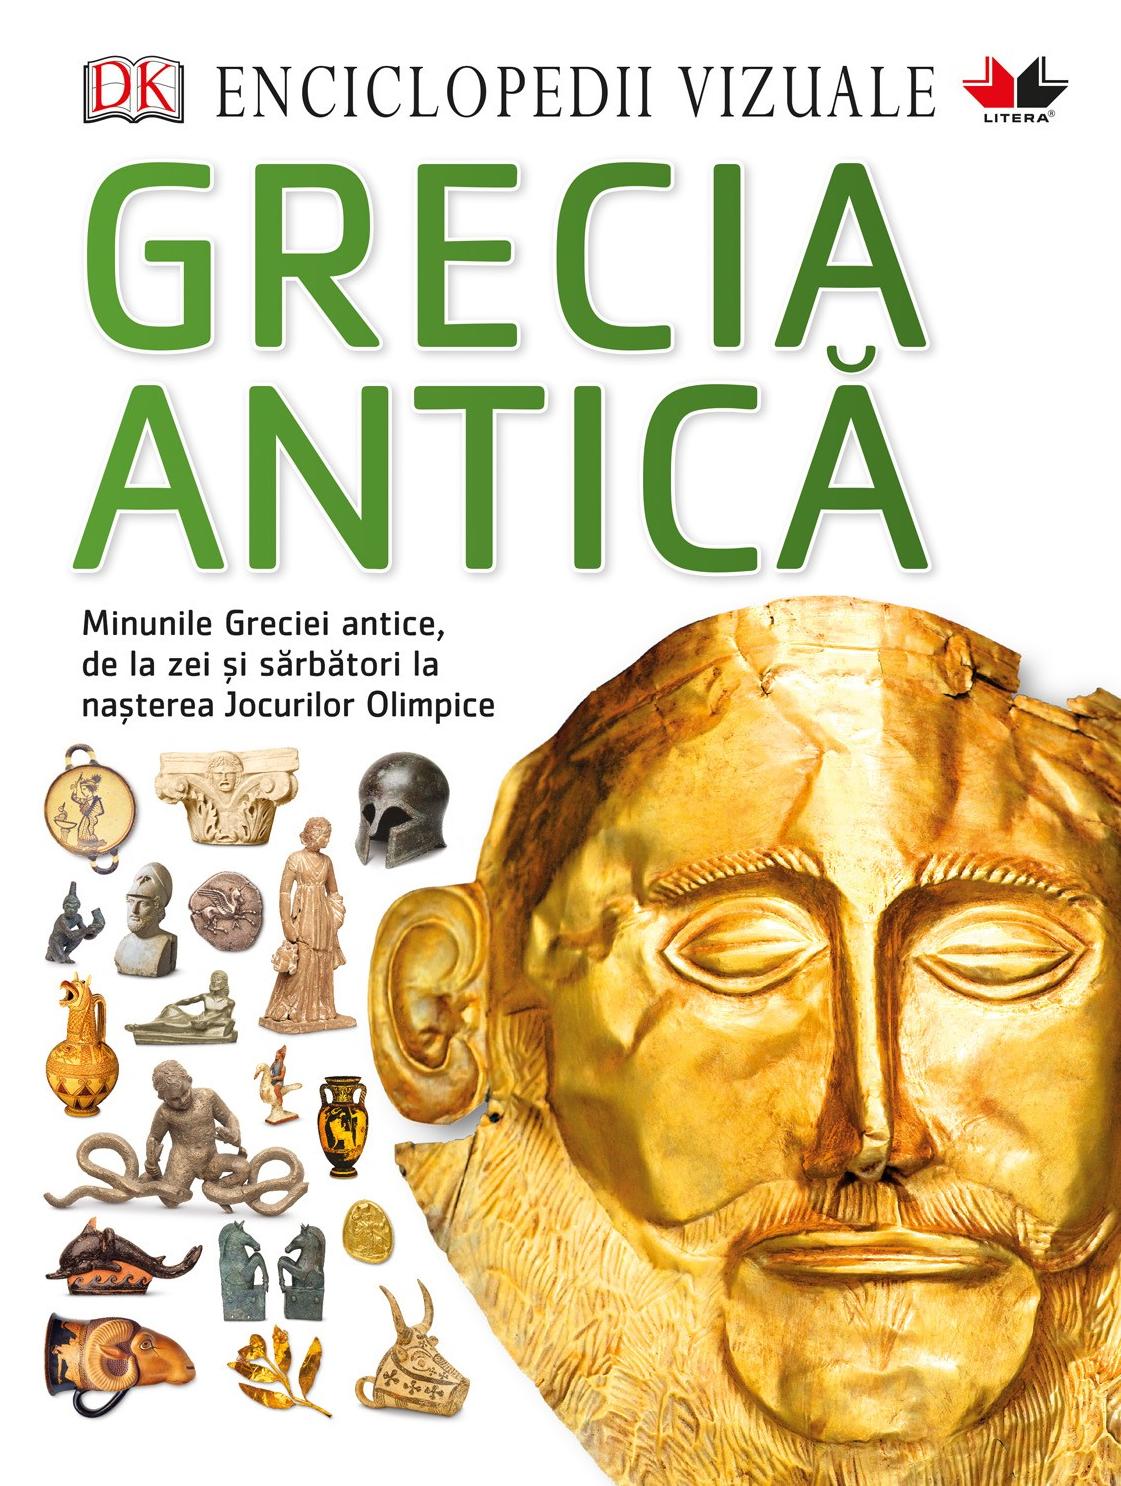 Enciclopedii vizuale: Grecia antica